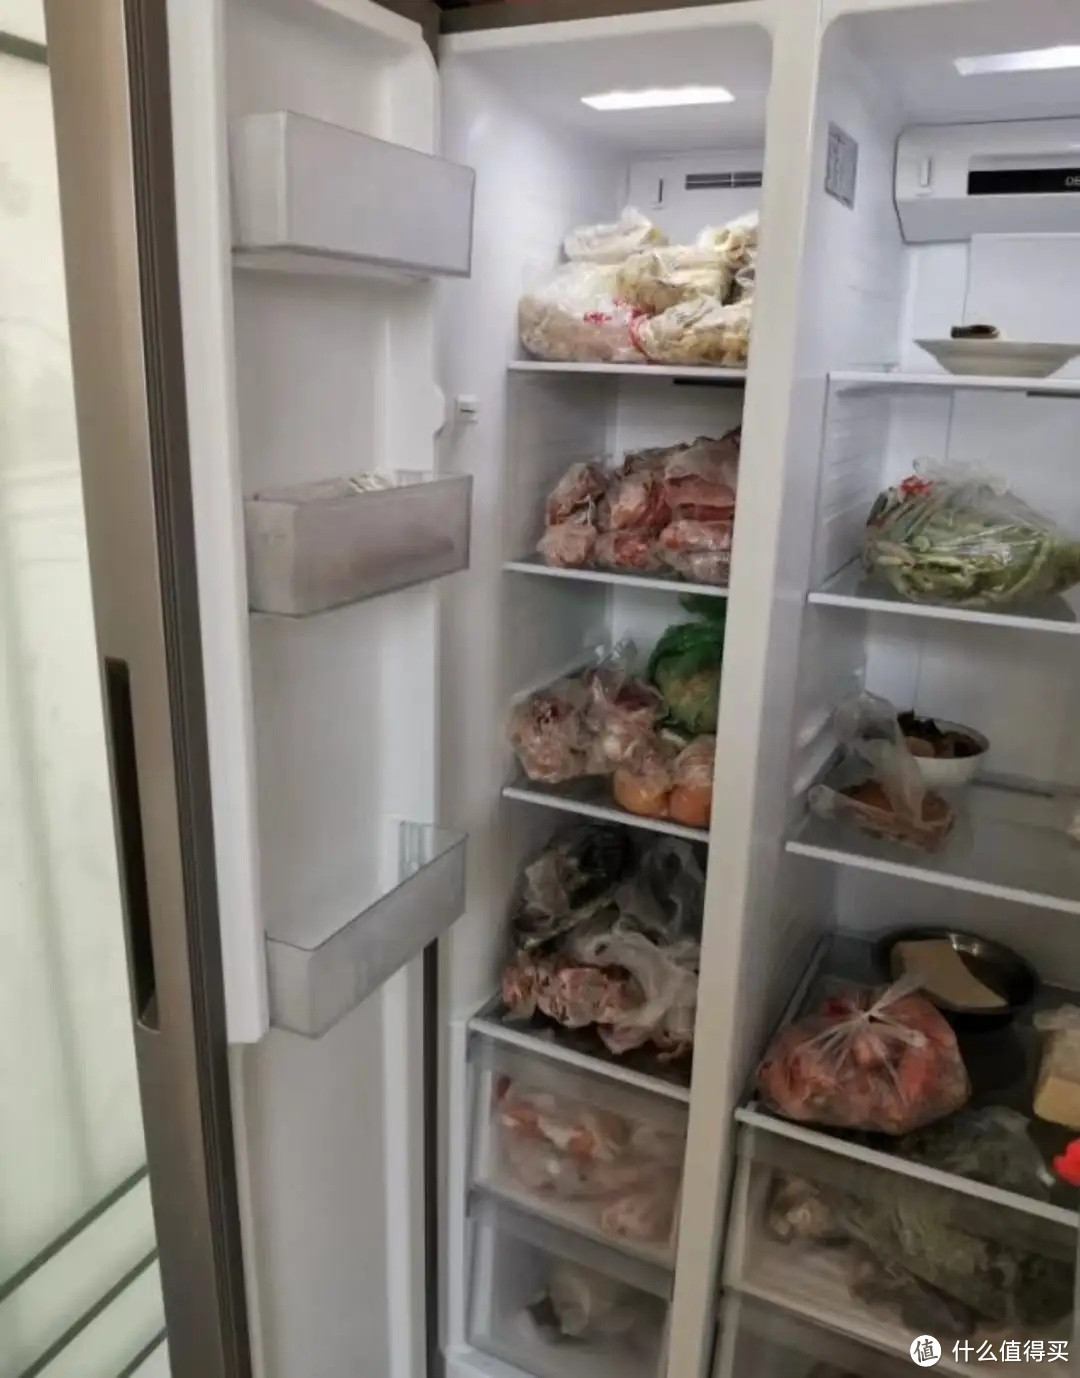 厨房太小要怎么选择冰箱，试试机身纤薄的统帅大容量冰箱